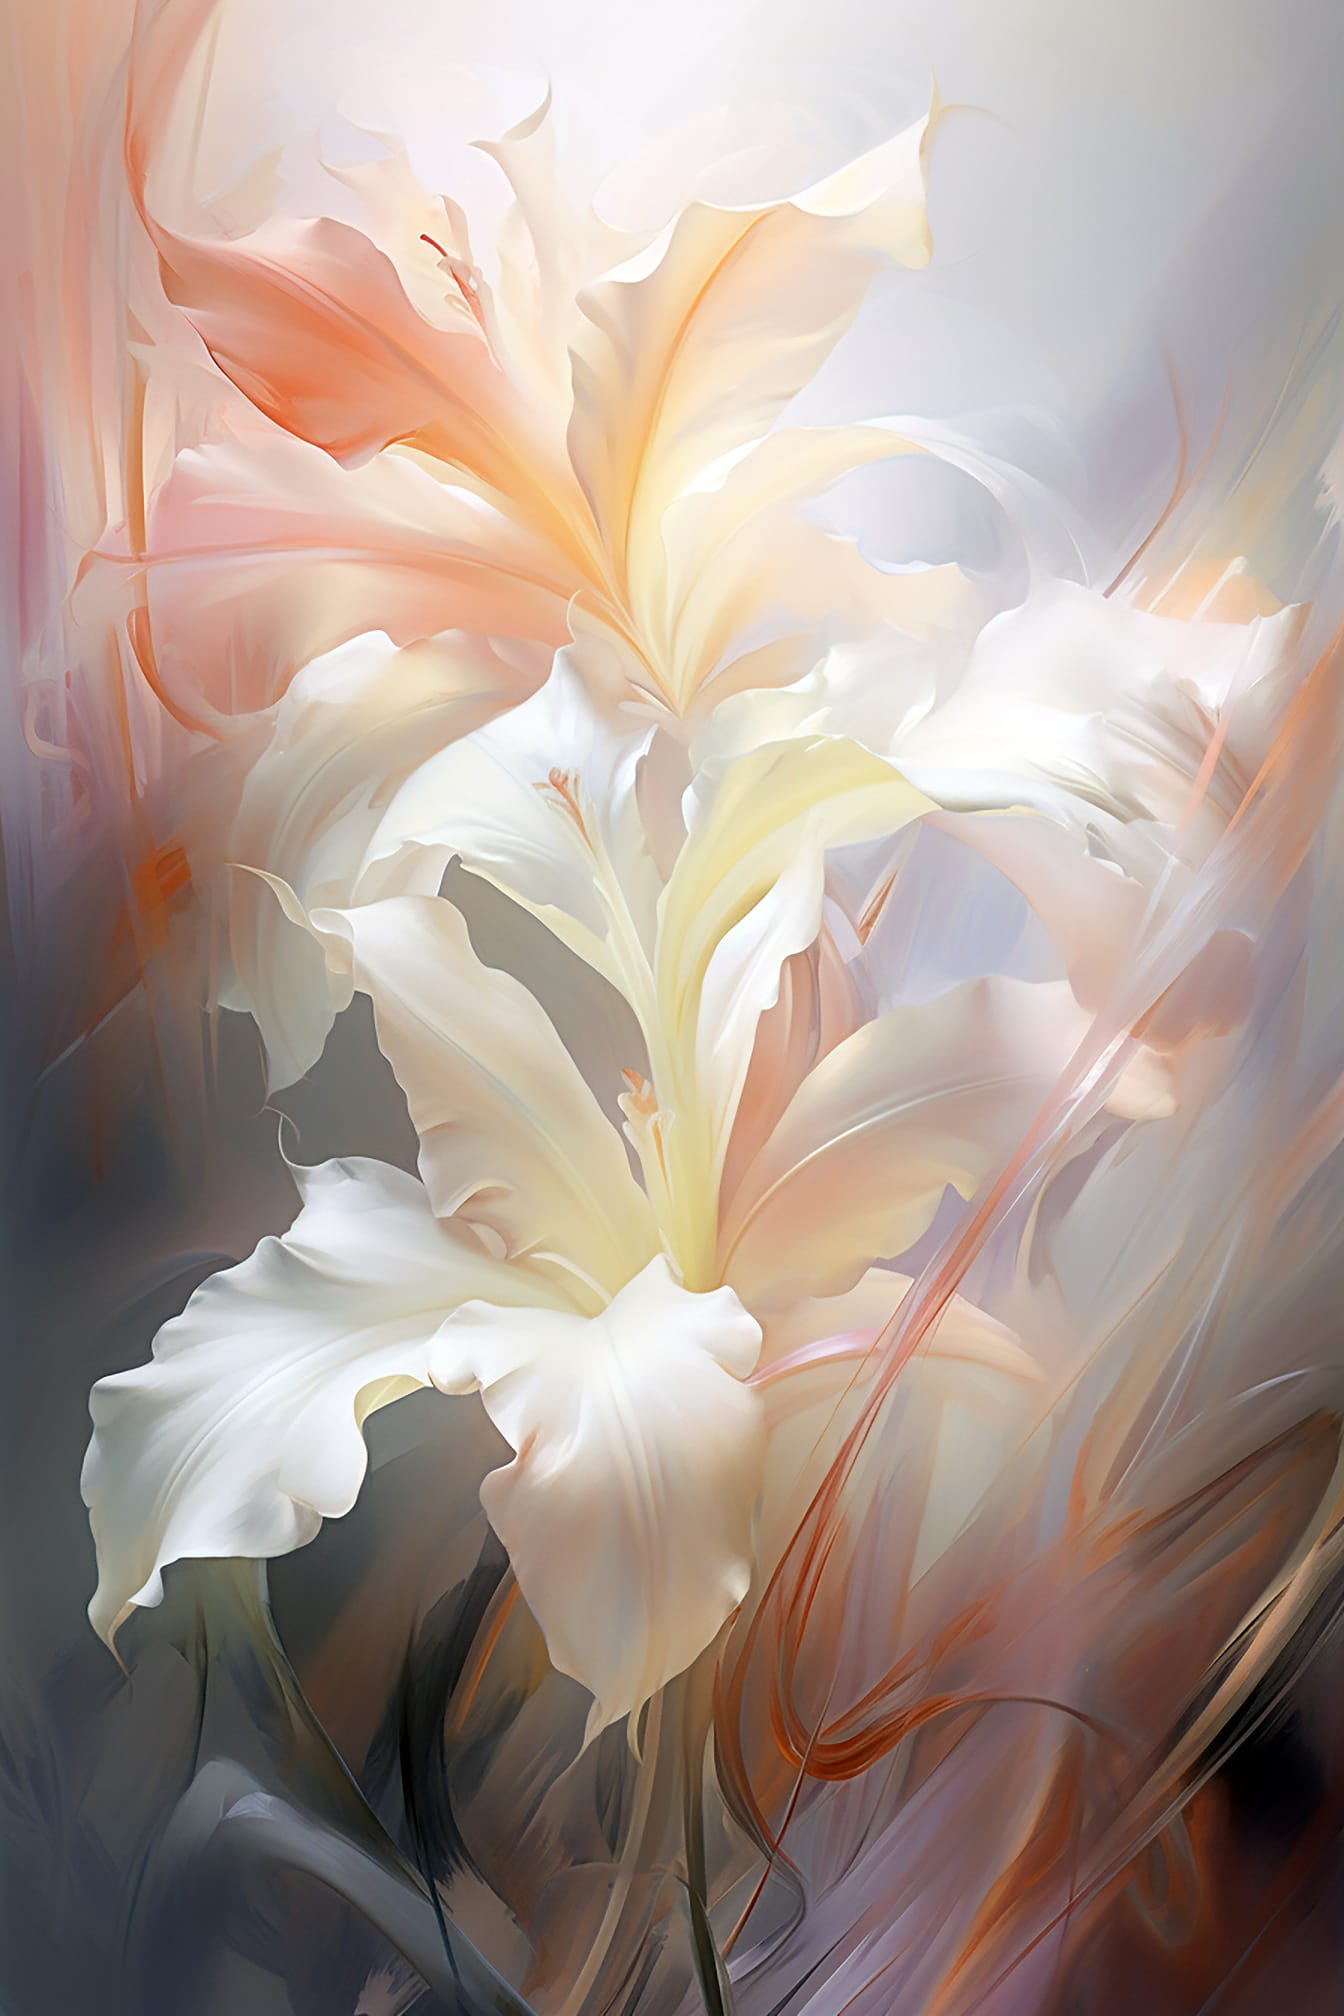 Αφηρημένη καλλιτεχνική απεικόνιση λευκών πετάλων λουλουδιών σε στυλ καλών τεχνών